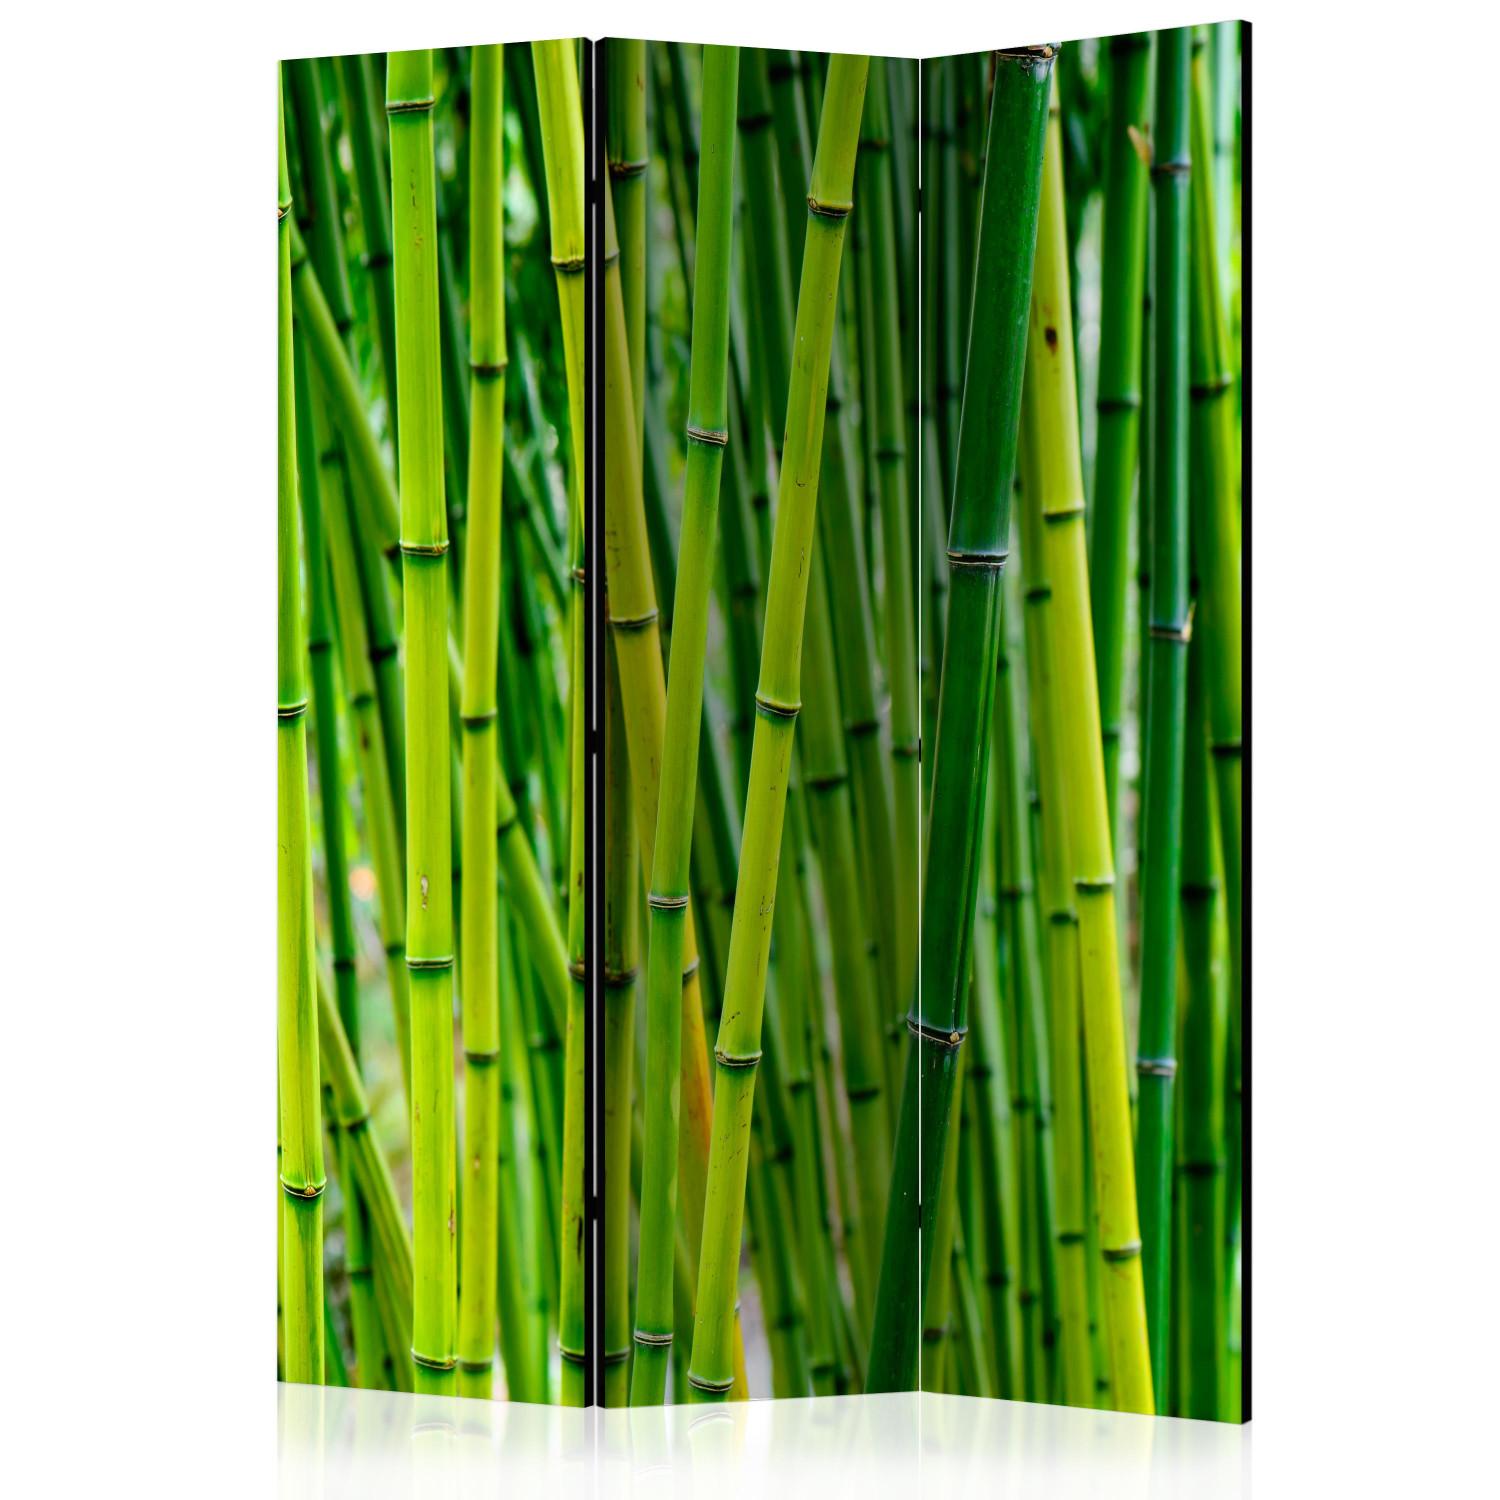 Biombo barato Bosque de bambú: árboles de bambú verdes en estilo zen oriental